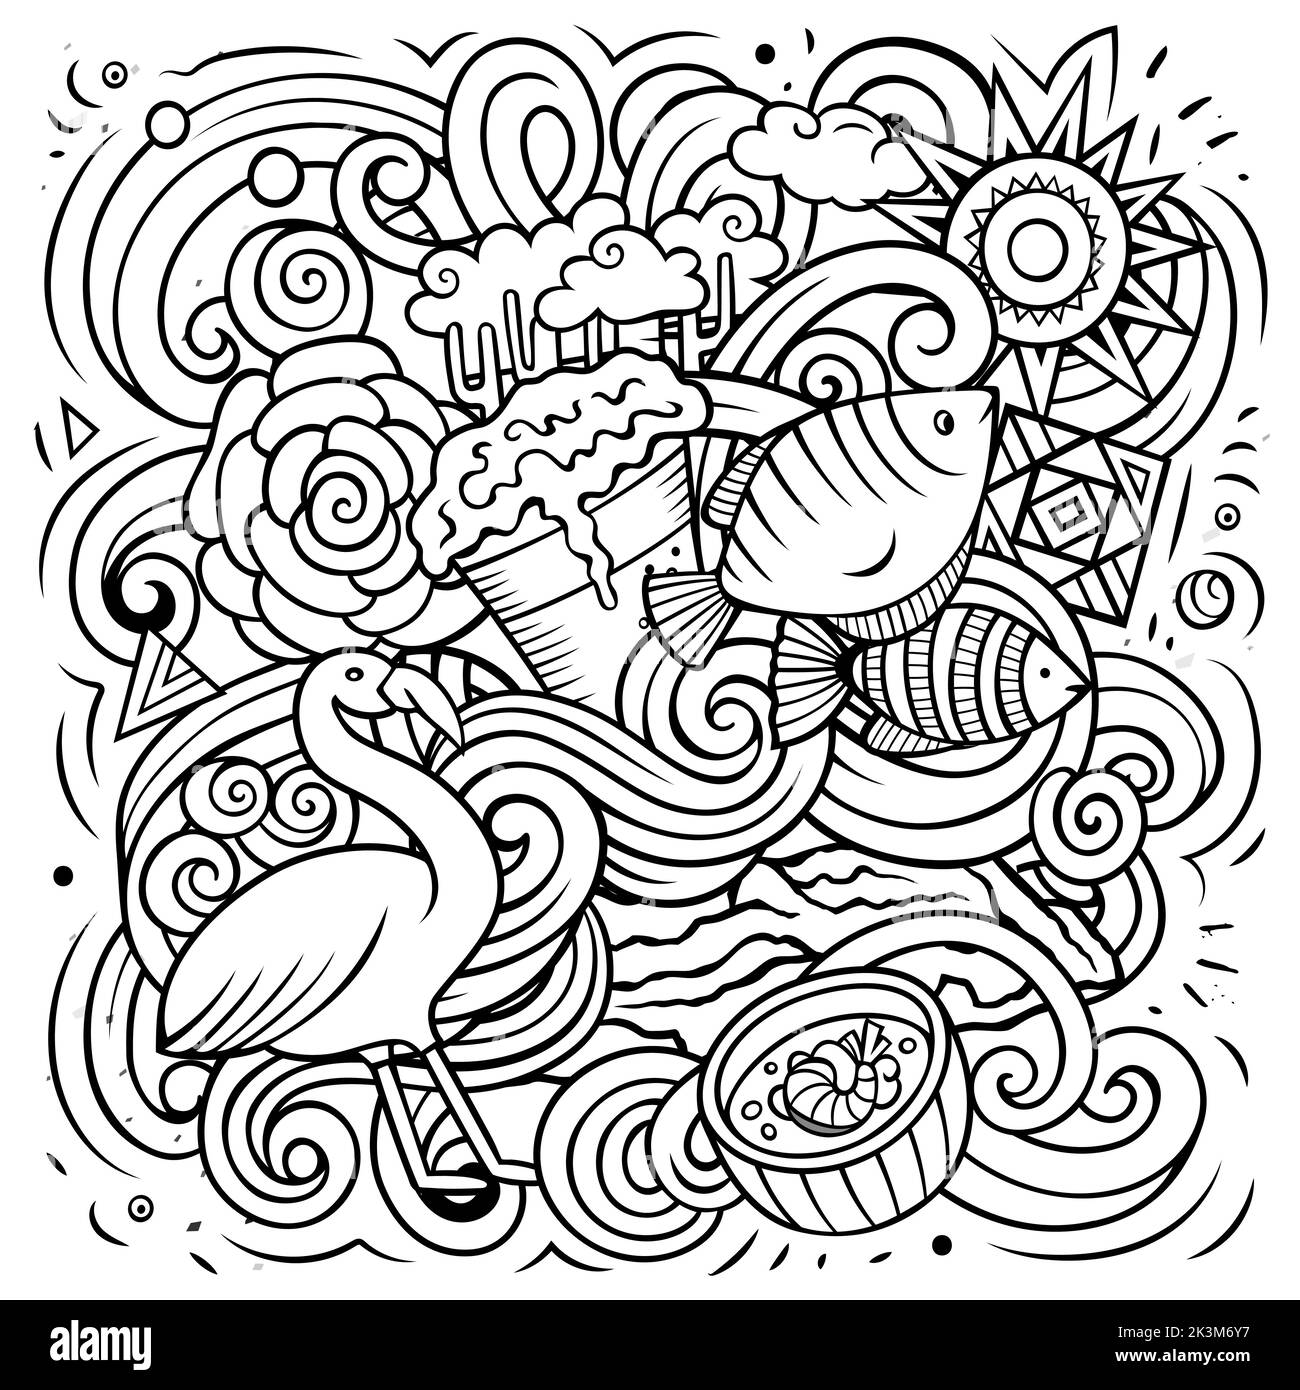 Ecuador disegno a mano fumetto doodles illustrazione. Design divertente. Illustrazione Vettoriale